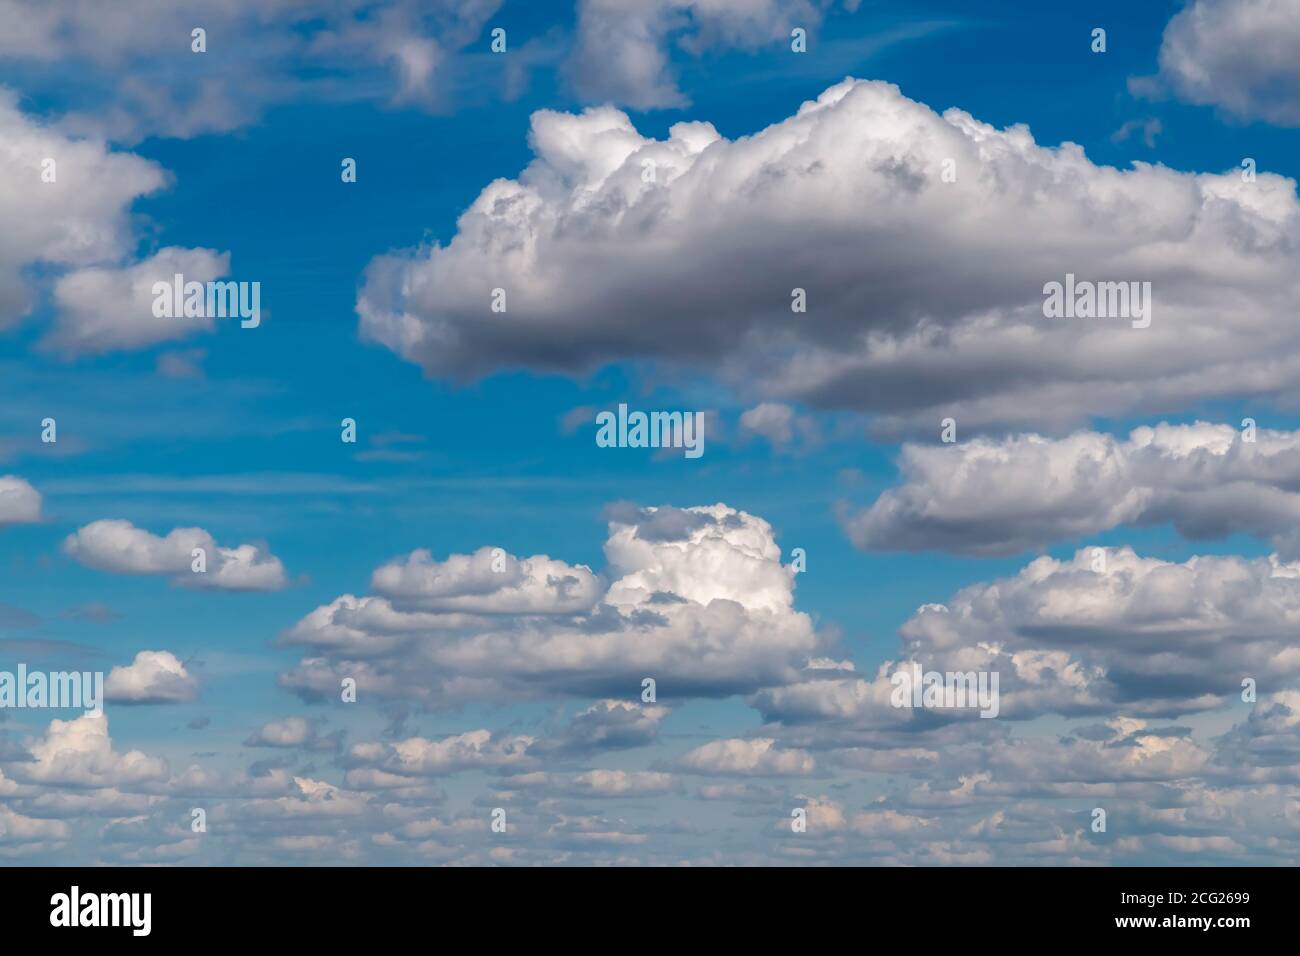 Nuvole grigie piovose in cielo blu per collage come naturale sfondo Foto Stock